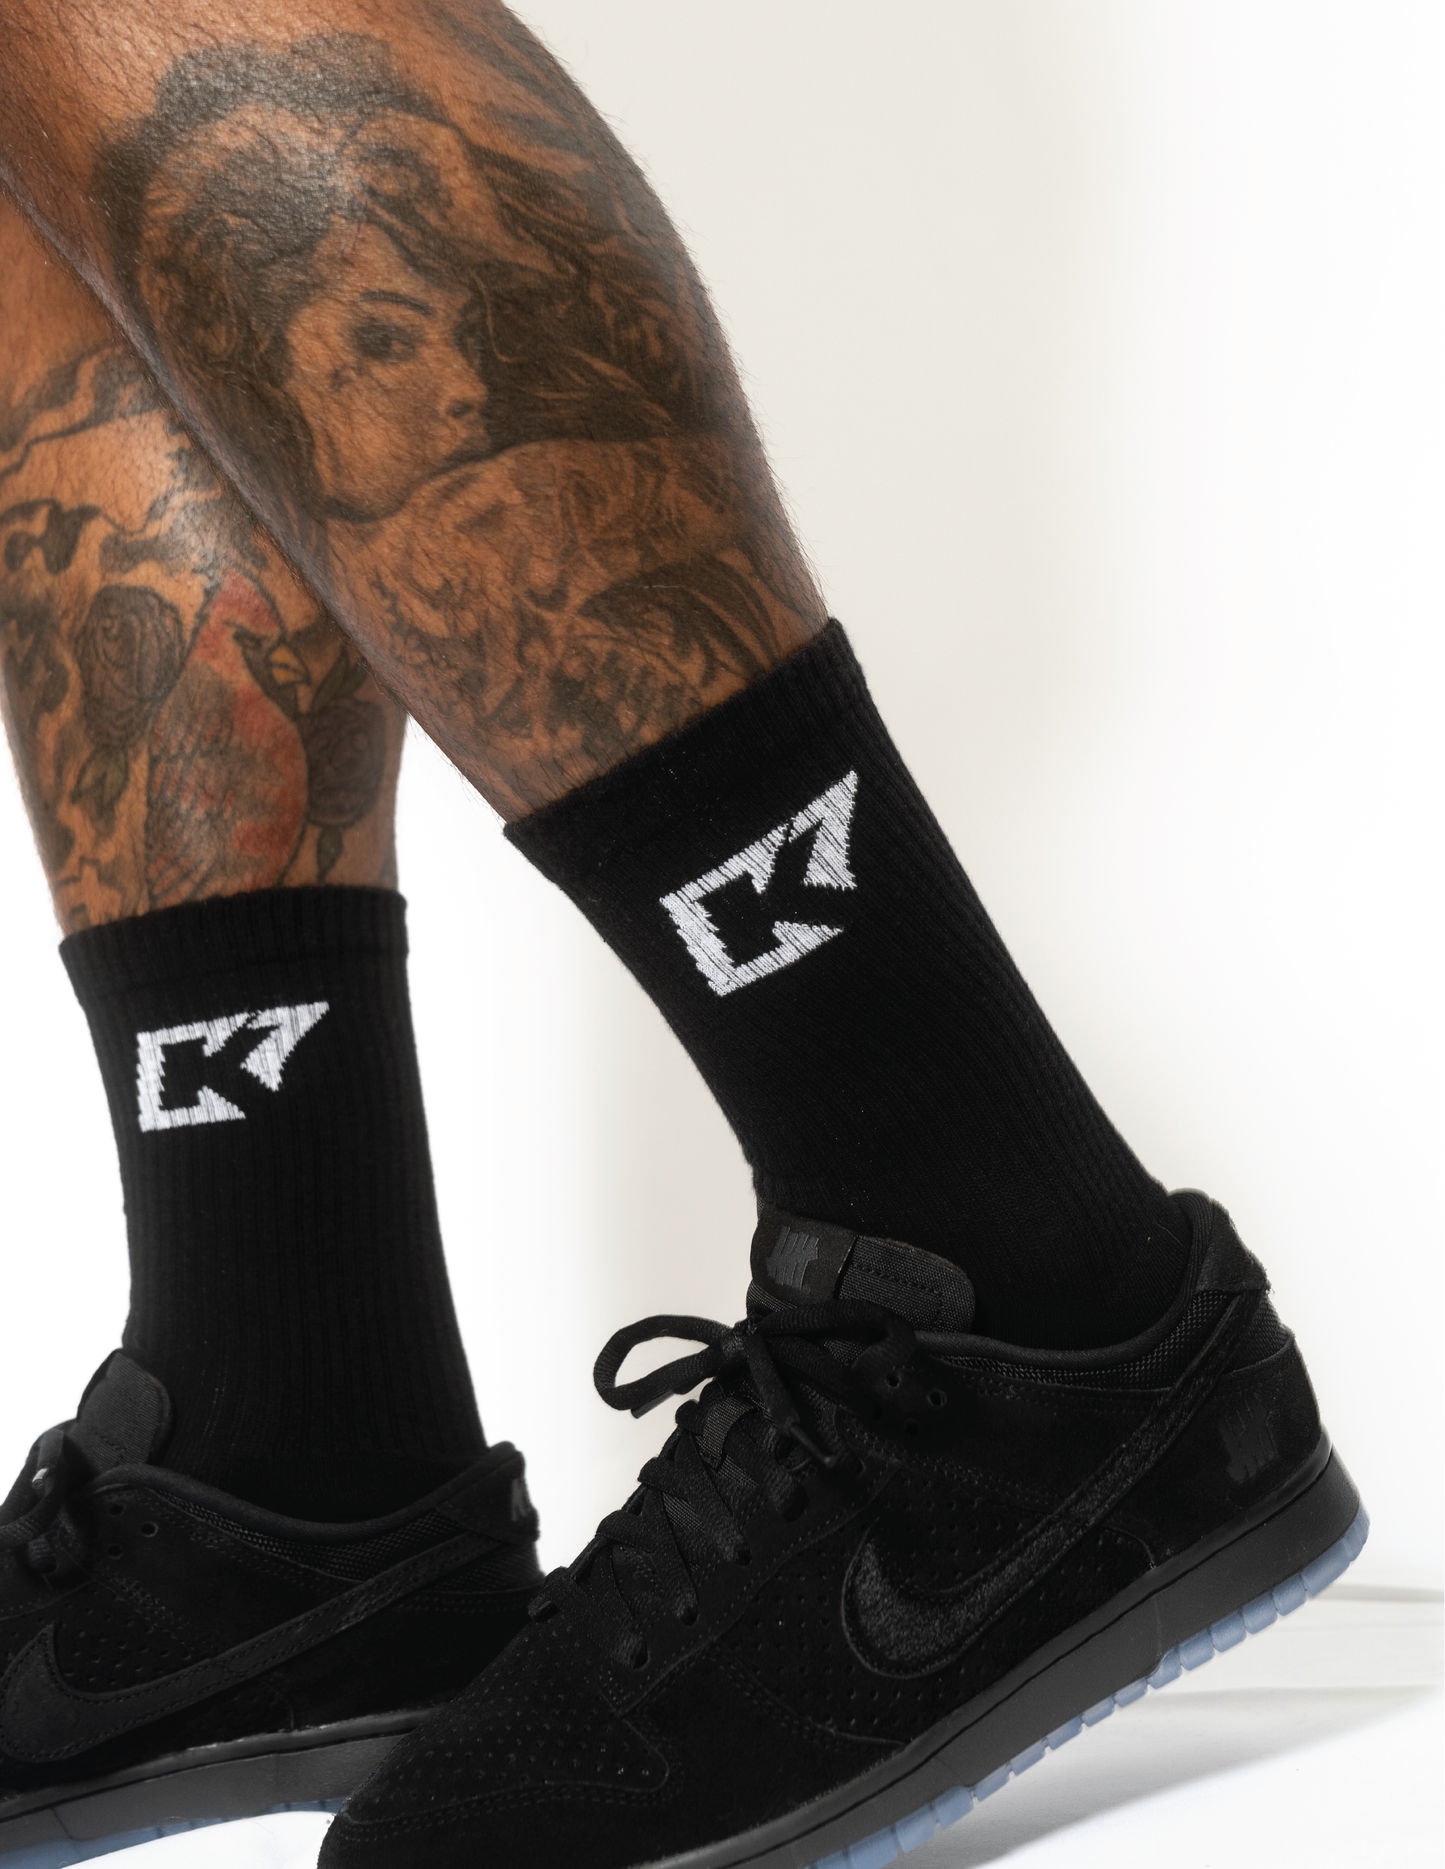 CK7 Black Socks